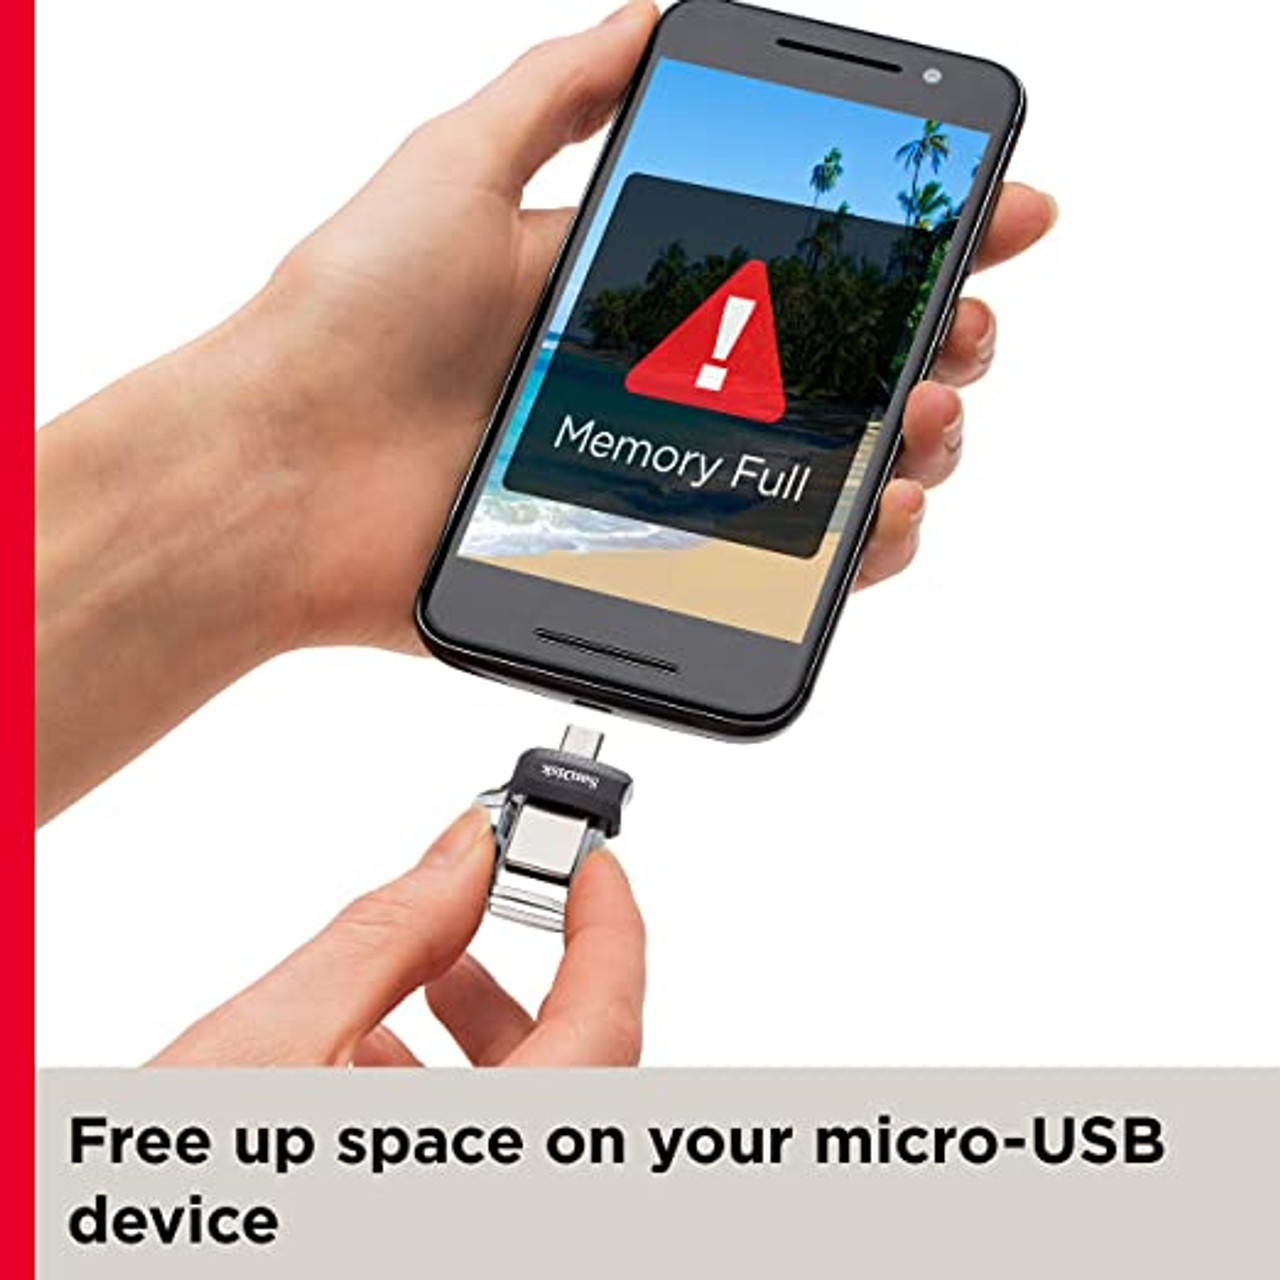 SanDisk Ultra Dual Drive M3.0 64GB USB 3.0 / micro USB (SDDD3-064G